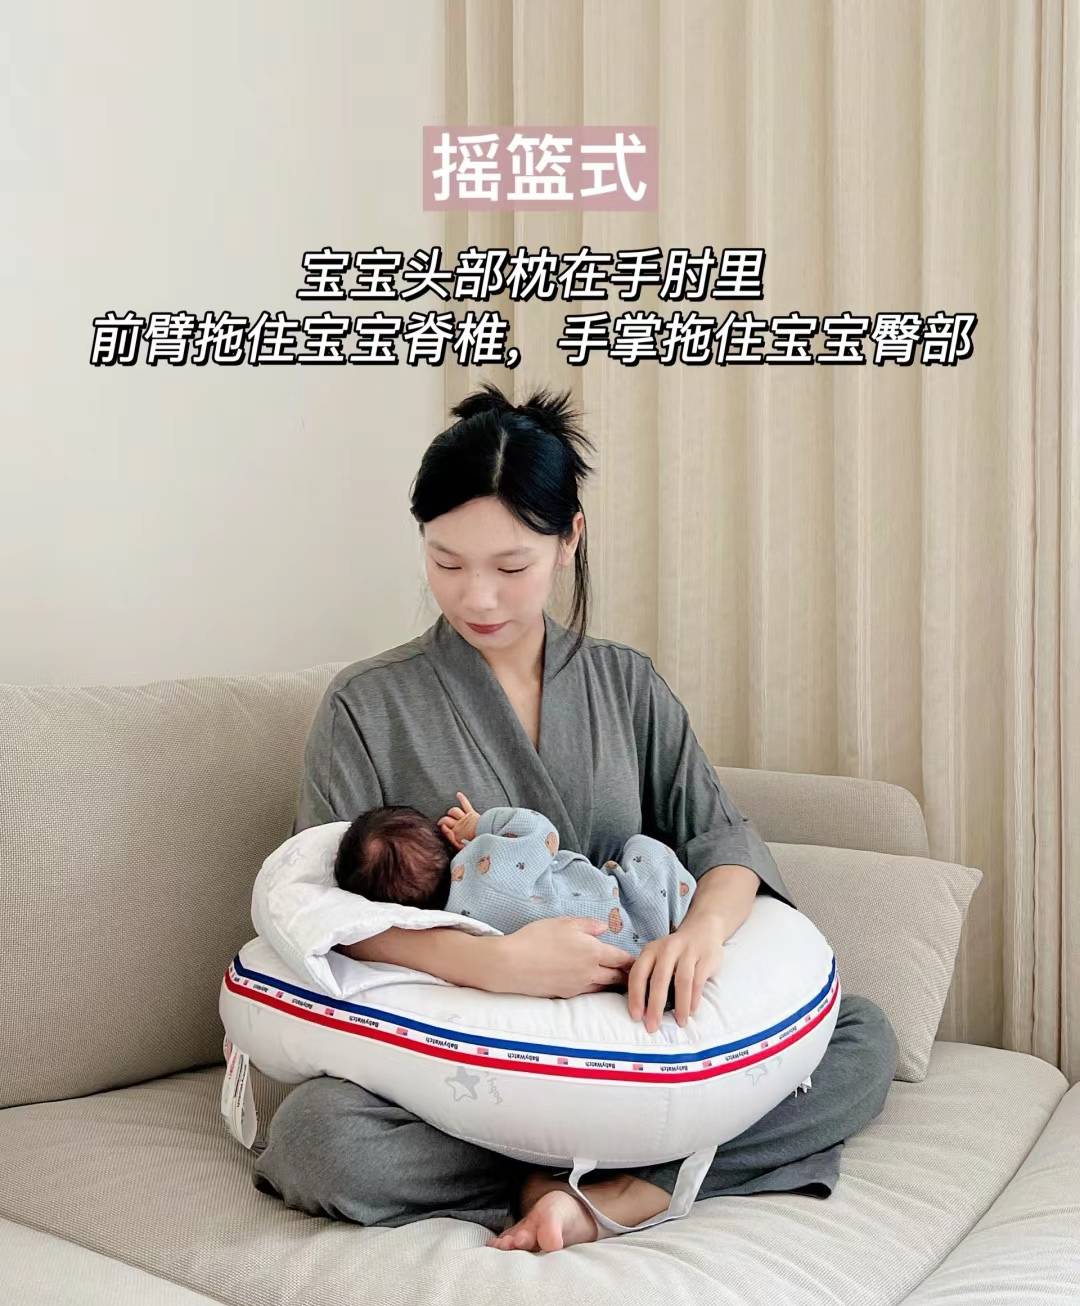 手掌部托住宝宝臀部摇篮式:比较常见的哺乳姿势,适合早产,顺产妈妈